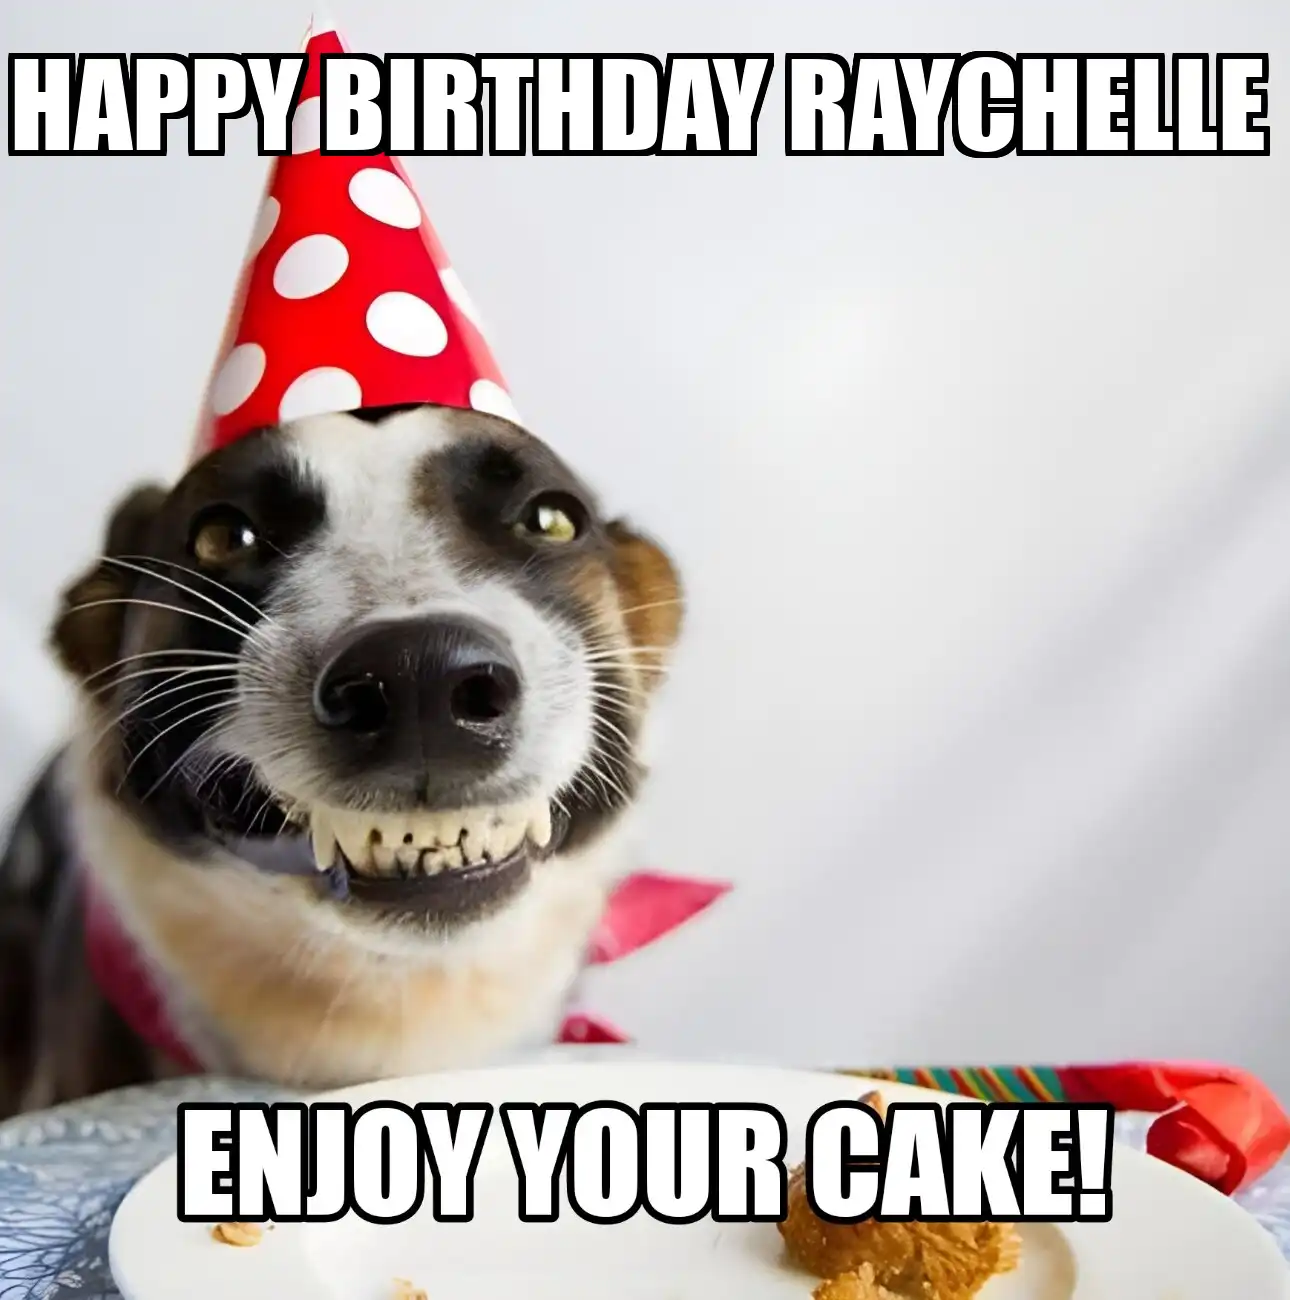 Happy Birthday Raychelle Enjoy Your Cake Dog Meme